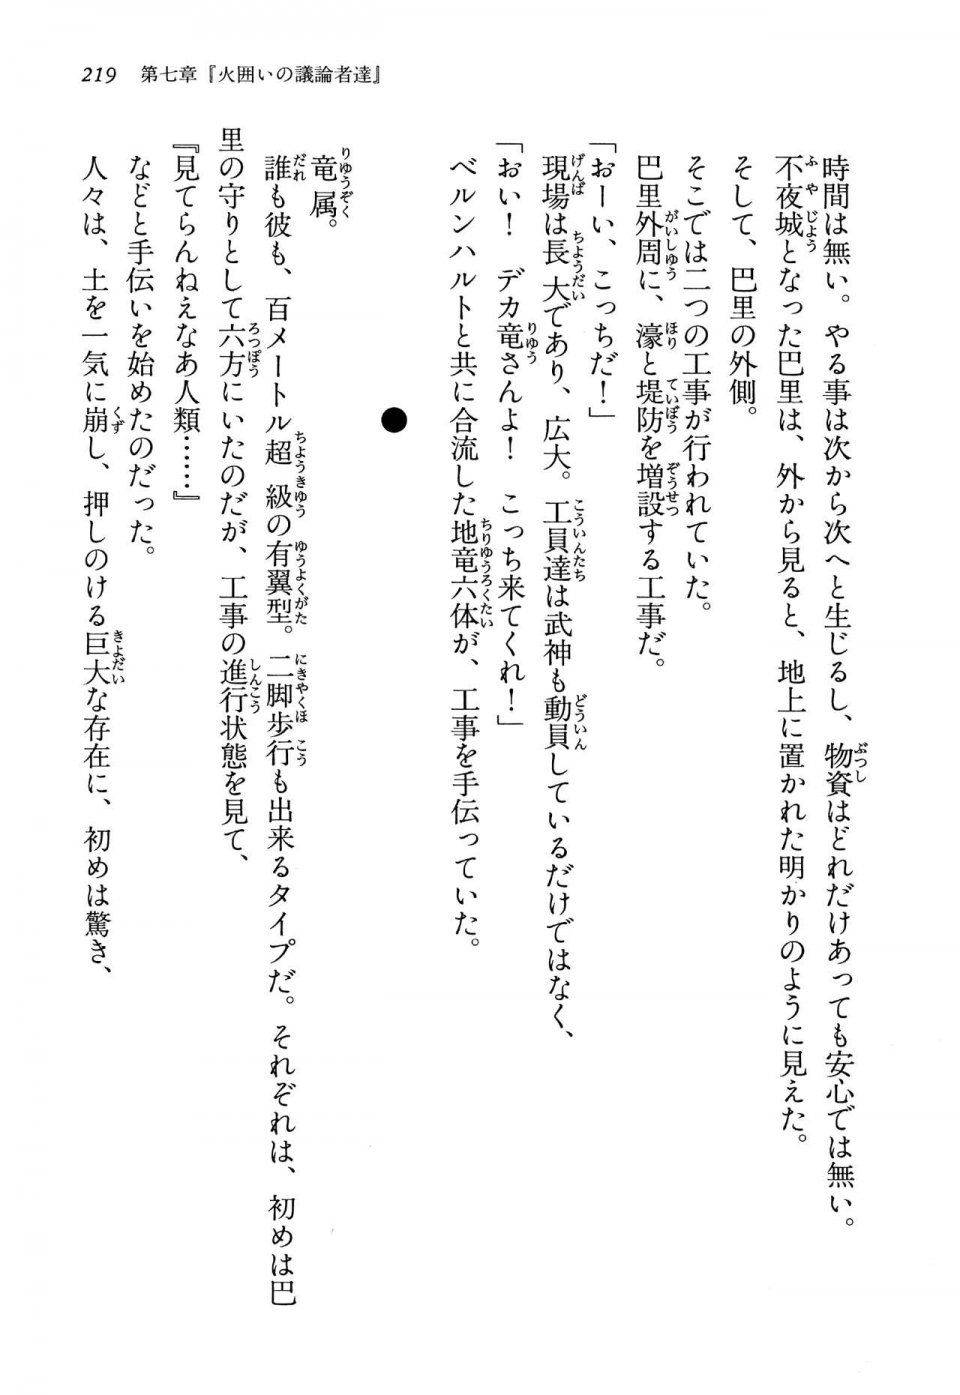 Kyoukai Senjou no Horizon LN Vol 13(6A) - Photo #219